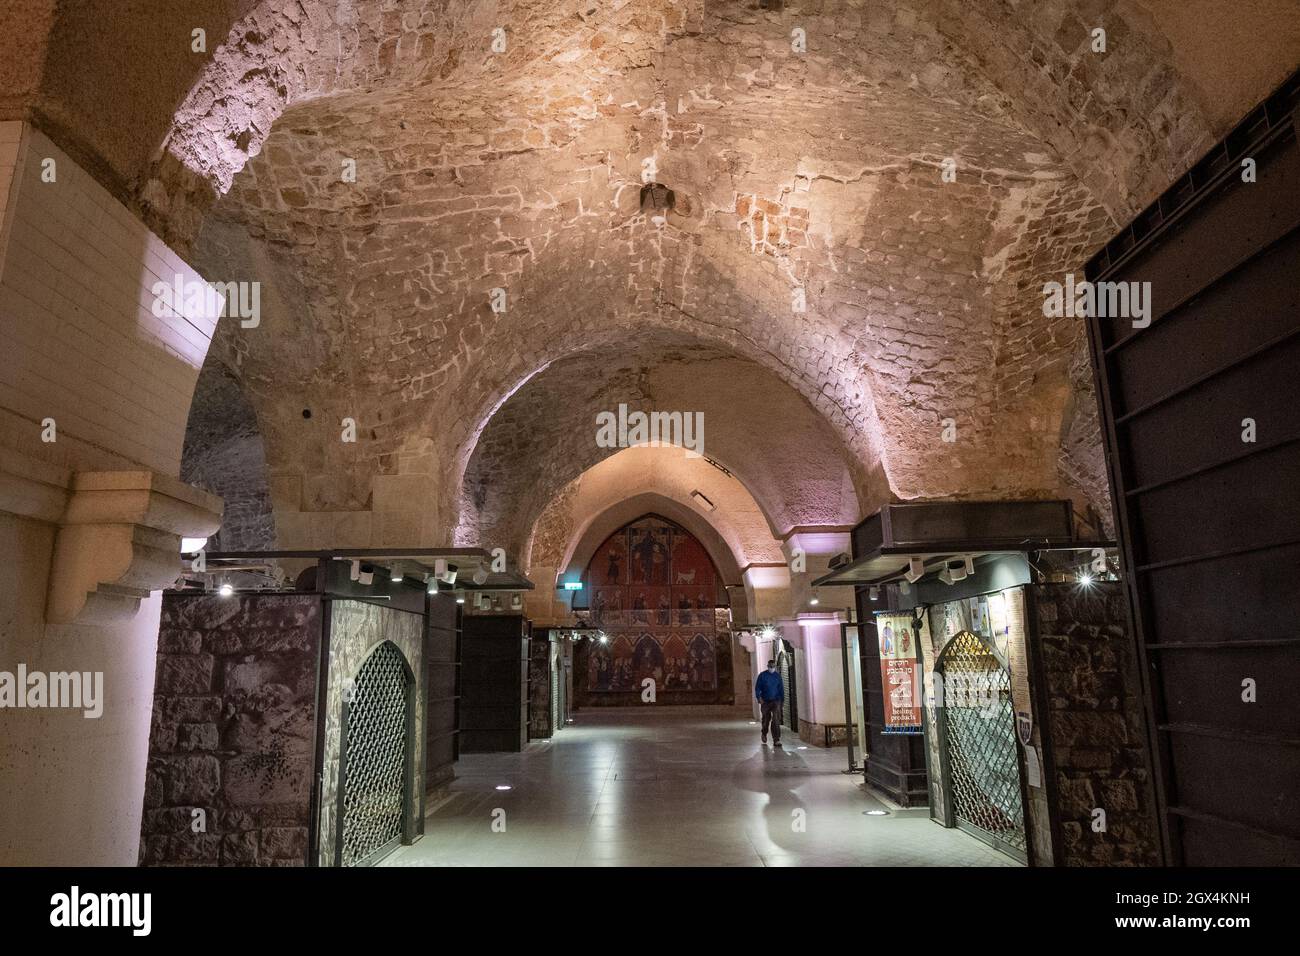 Il castello dei Crociati, il castello dei Templari nel quartiere storico, Acre o Akko, patrimonio dell'umanità dell'UNESCO, Israele, Medio Oriente Foto Stock